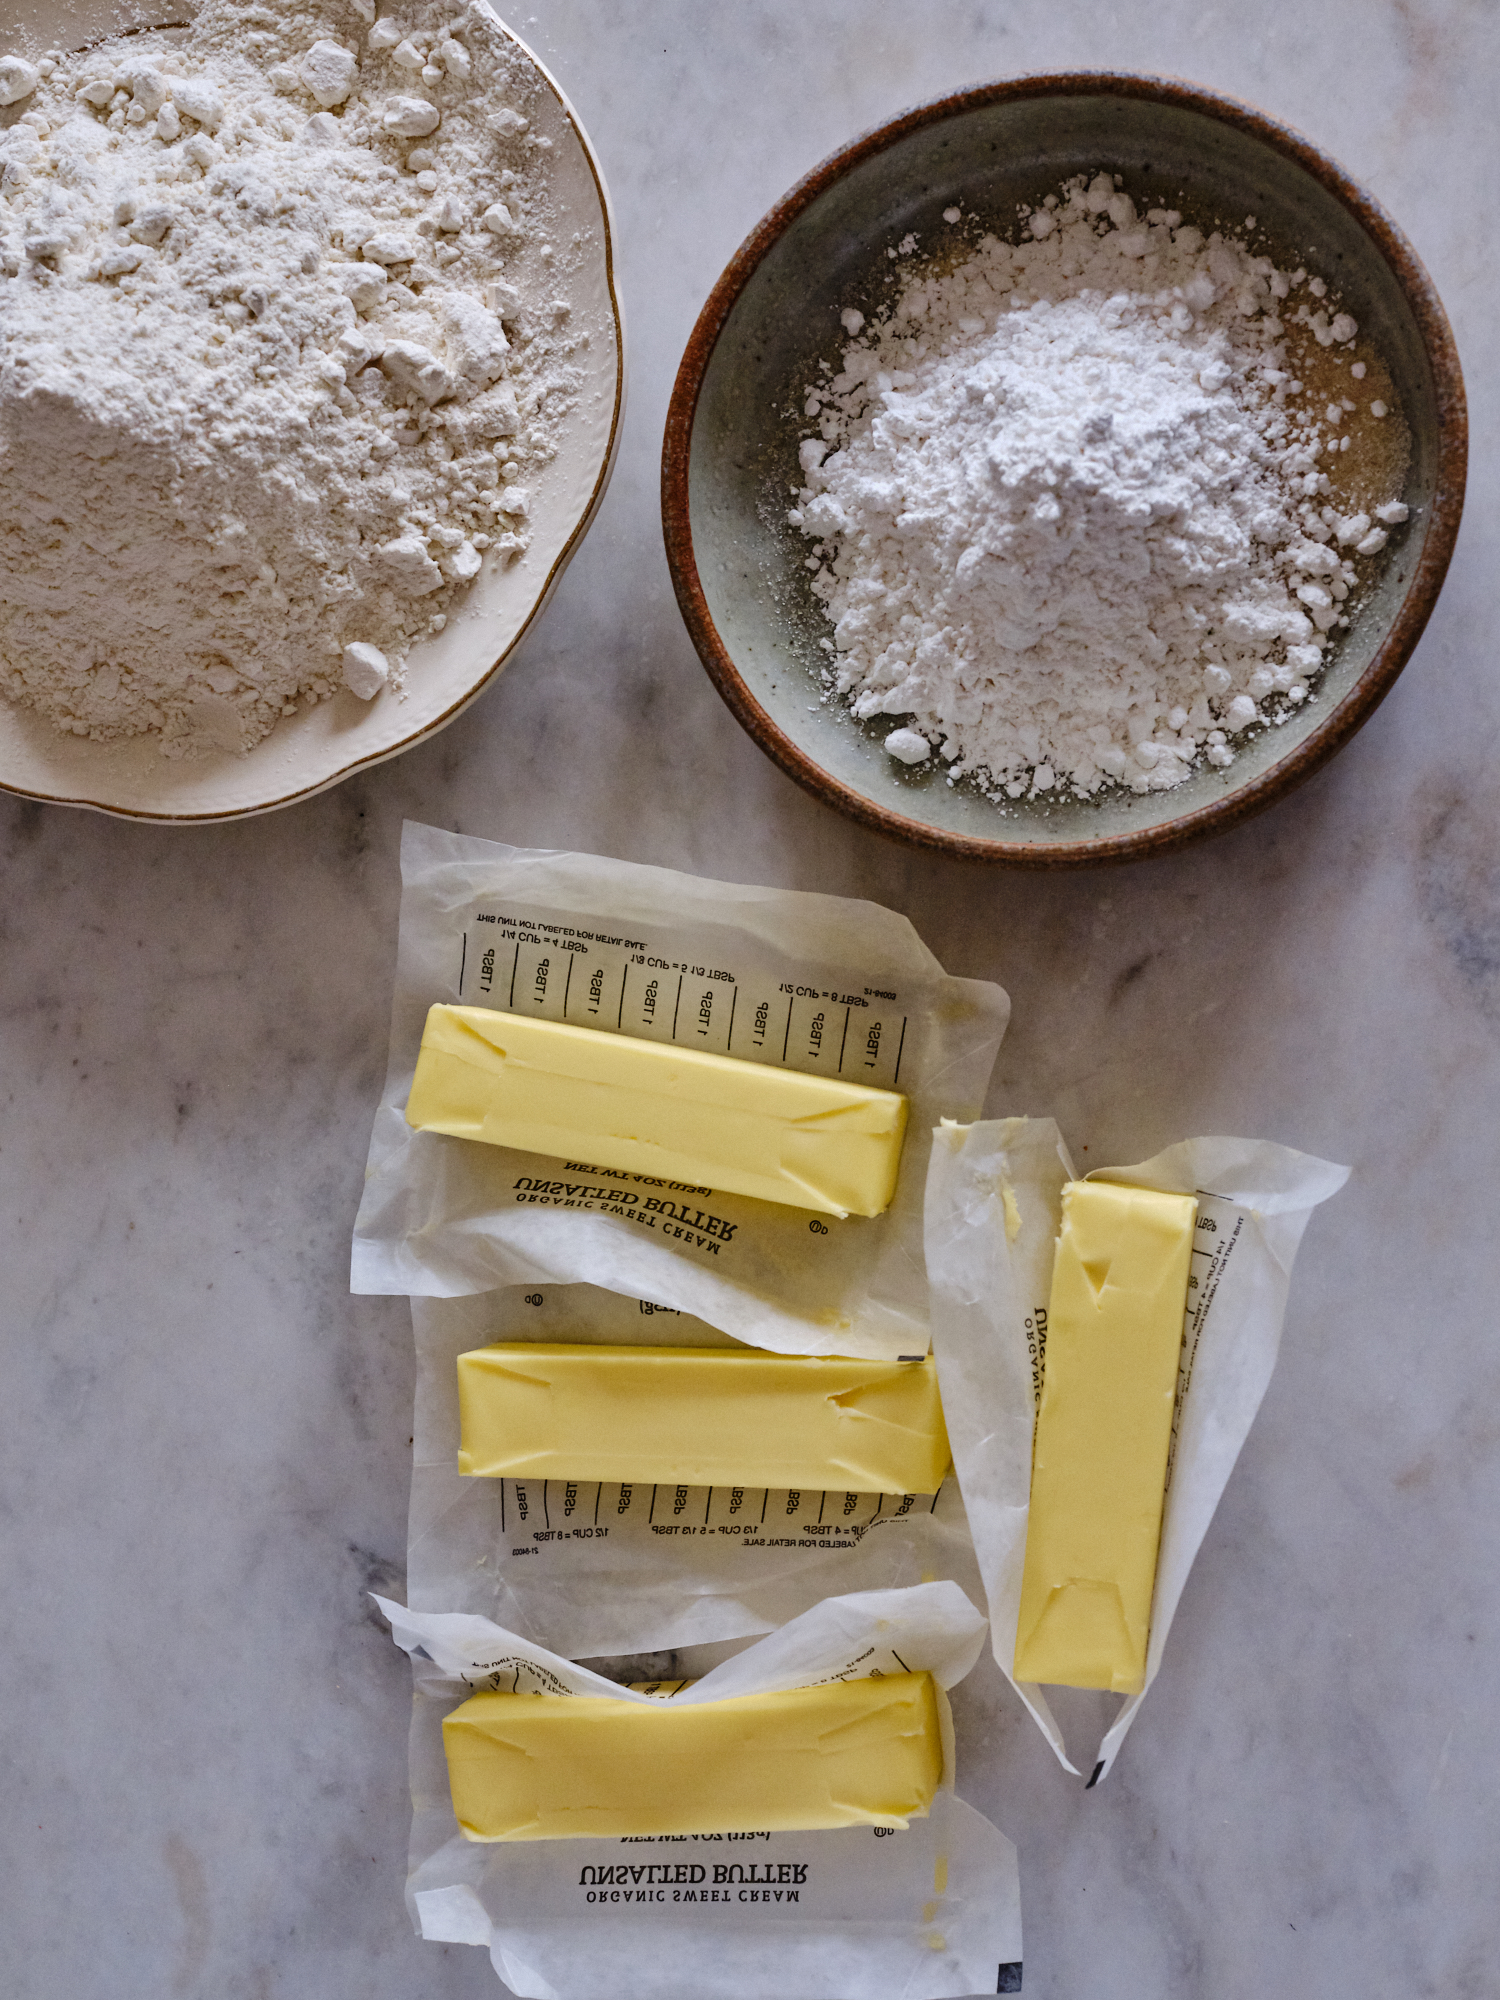 Ingredienti per la preparazione dei frollini: farina, burro, zucchero, sale